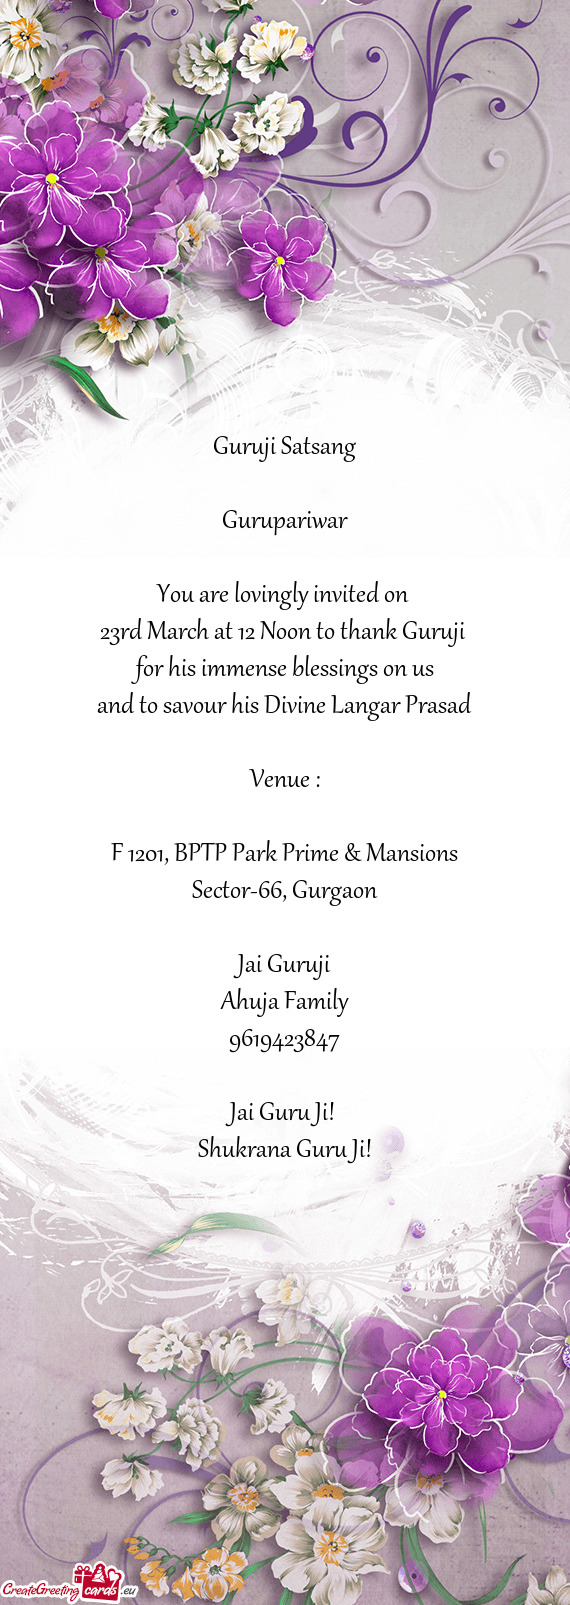 23rd March at 12 Noon to thank Guruji